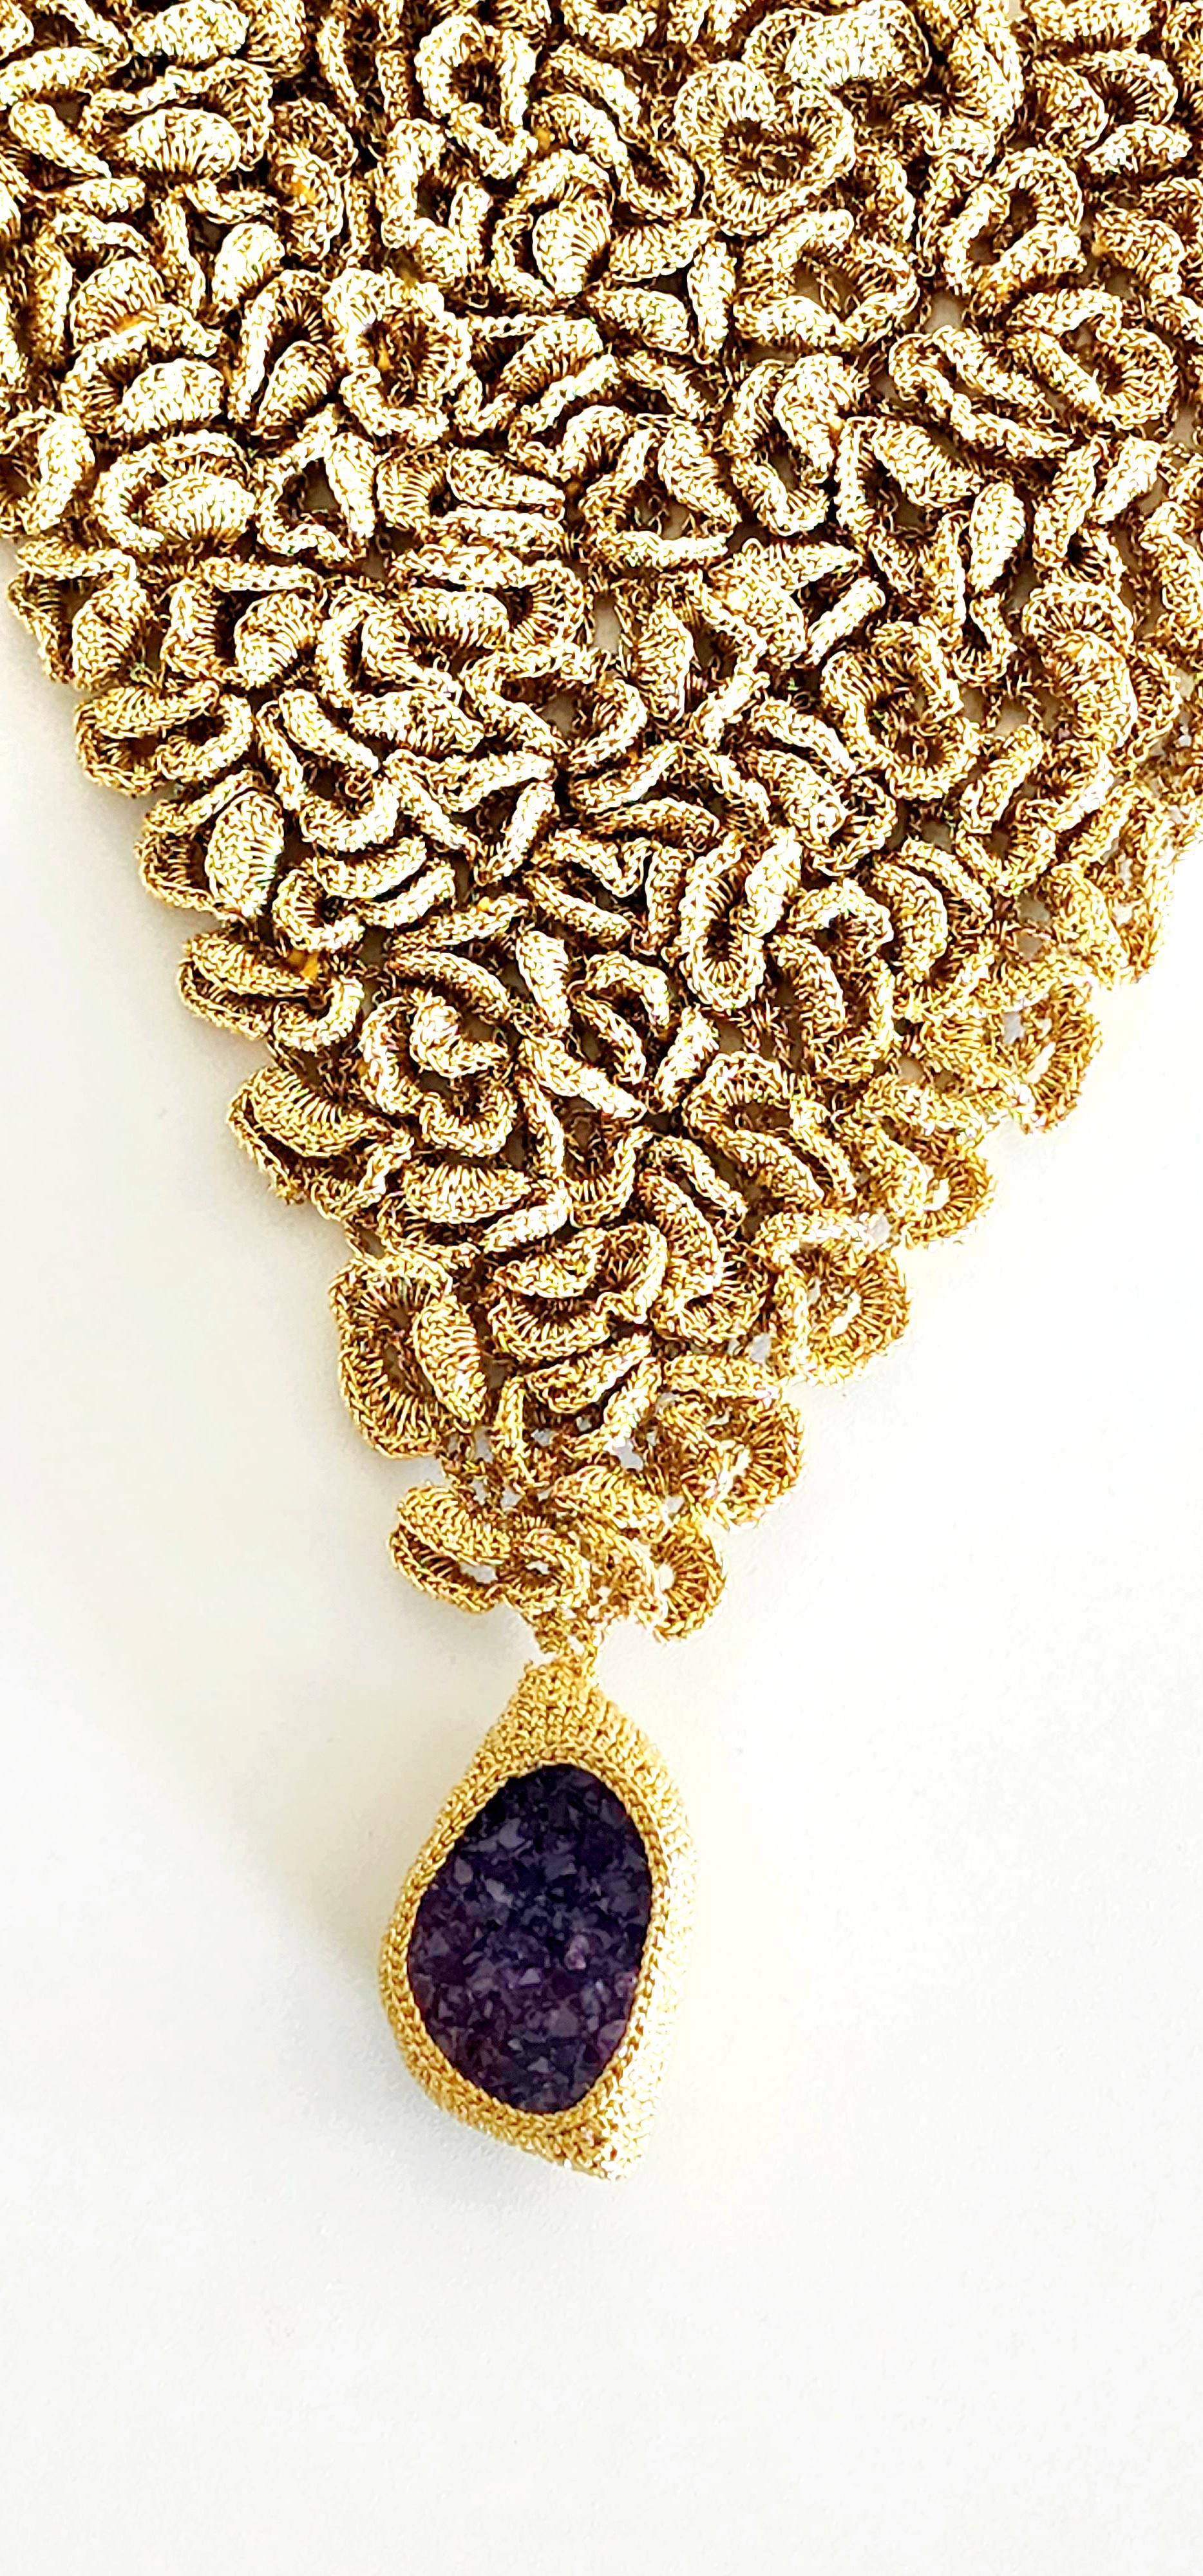 Wunderschöne, handgefertigte Häkelkette, ein Unikat, Designer-Halskette. Ich nenne es eine dreidimensionale Schal-Halskette. Sie ist leicht und sehr auffällig. Um die königliche Wirkung zu verstärken, habe ich einen schönen Amethyst-Stein aus Drusus